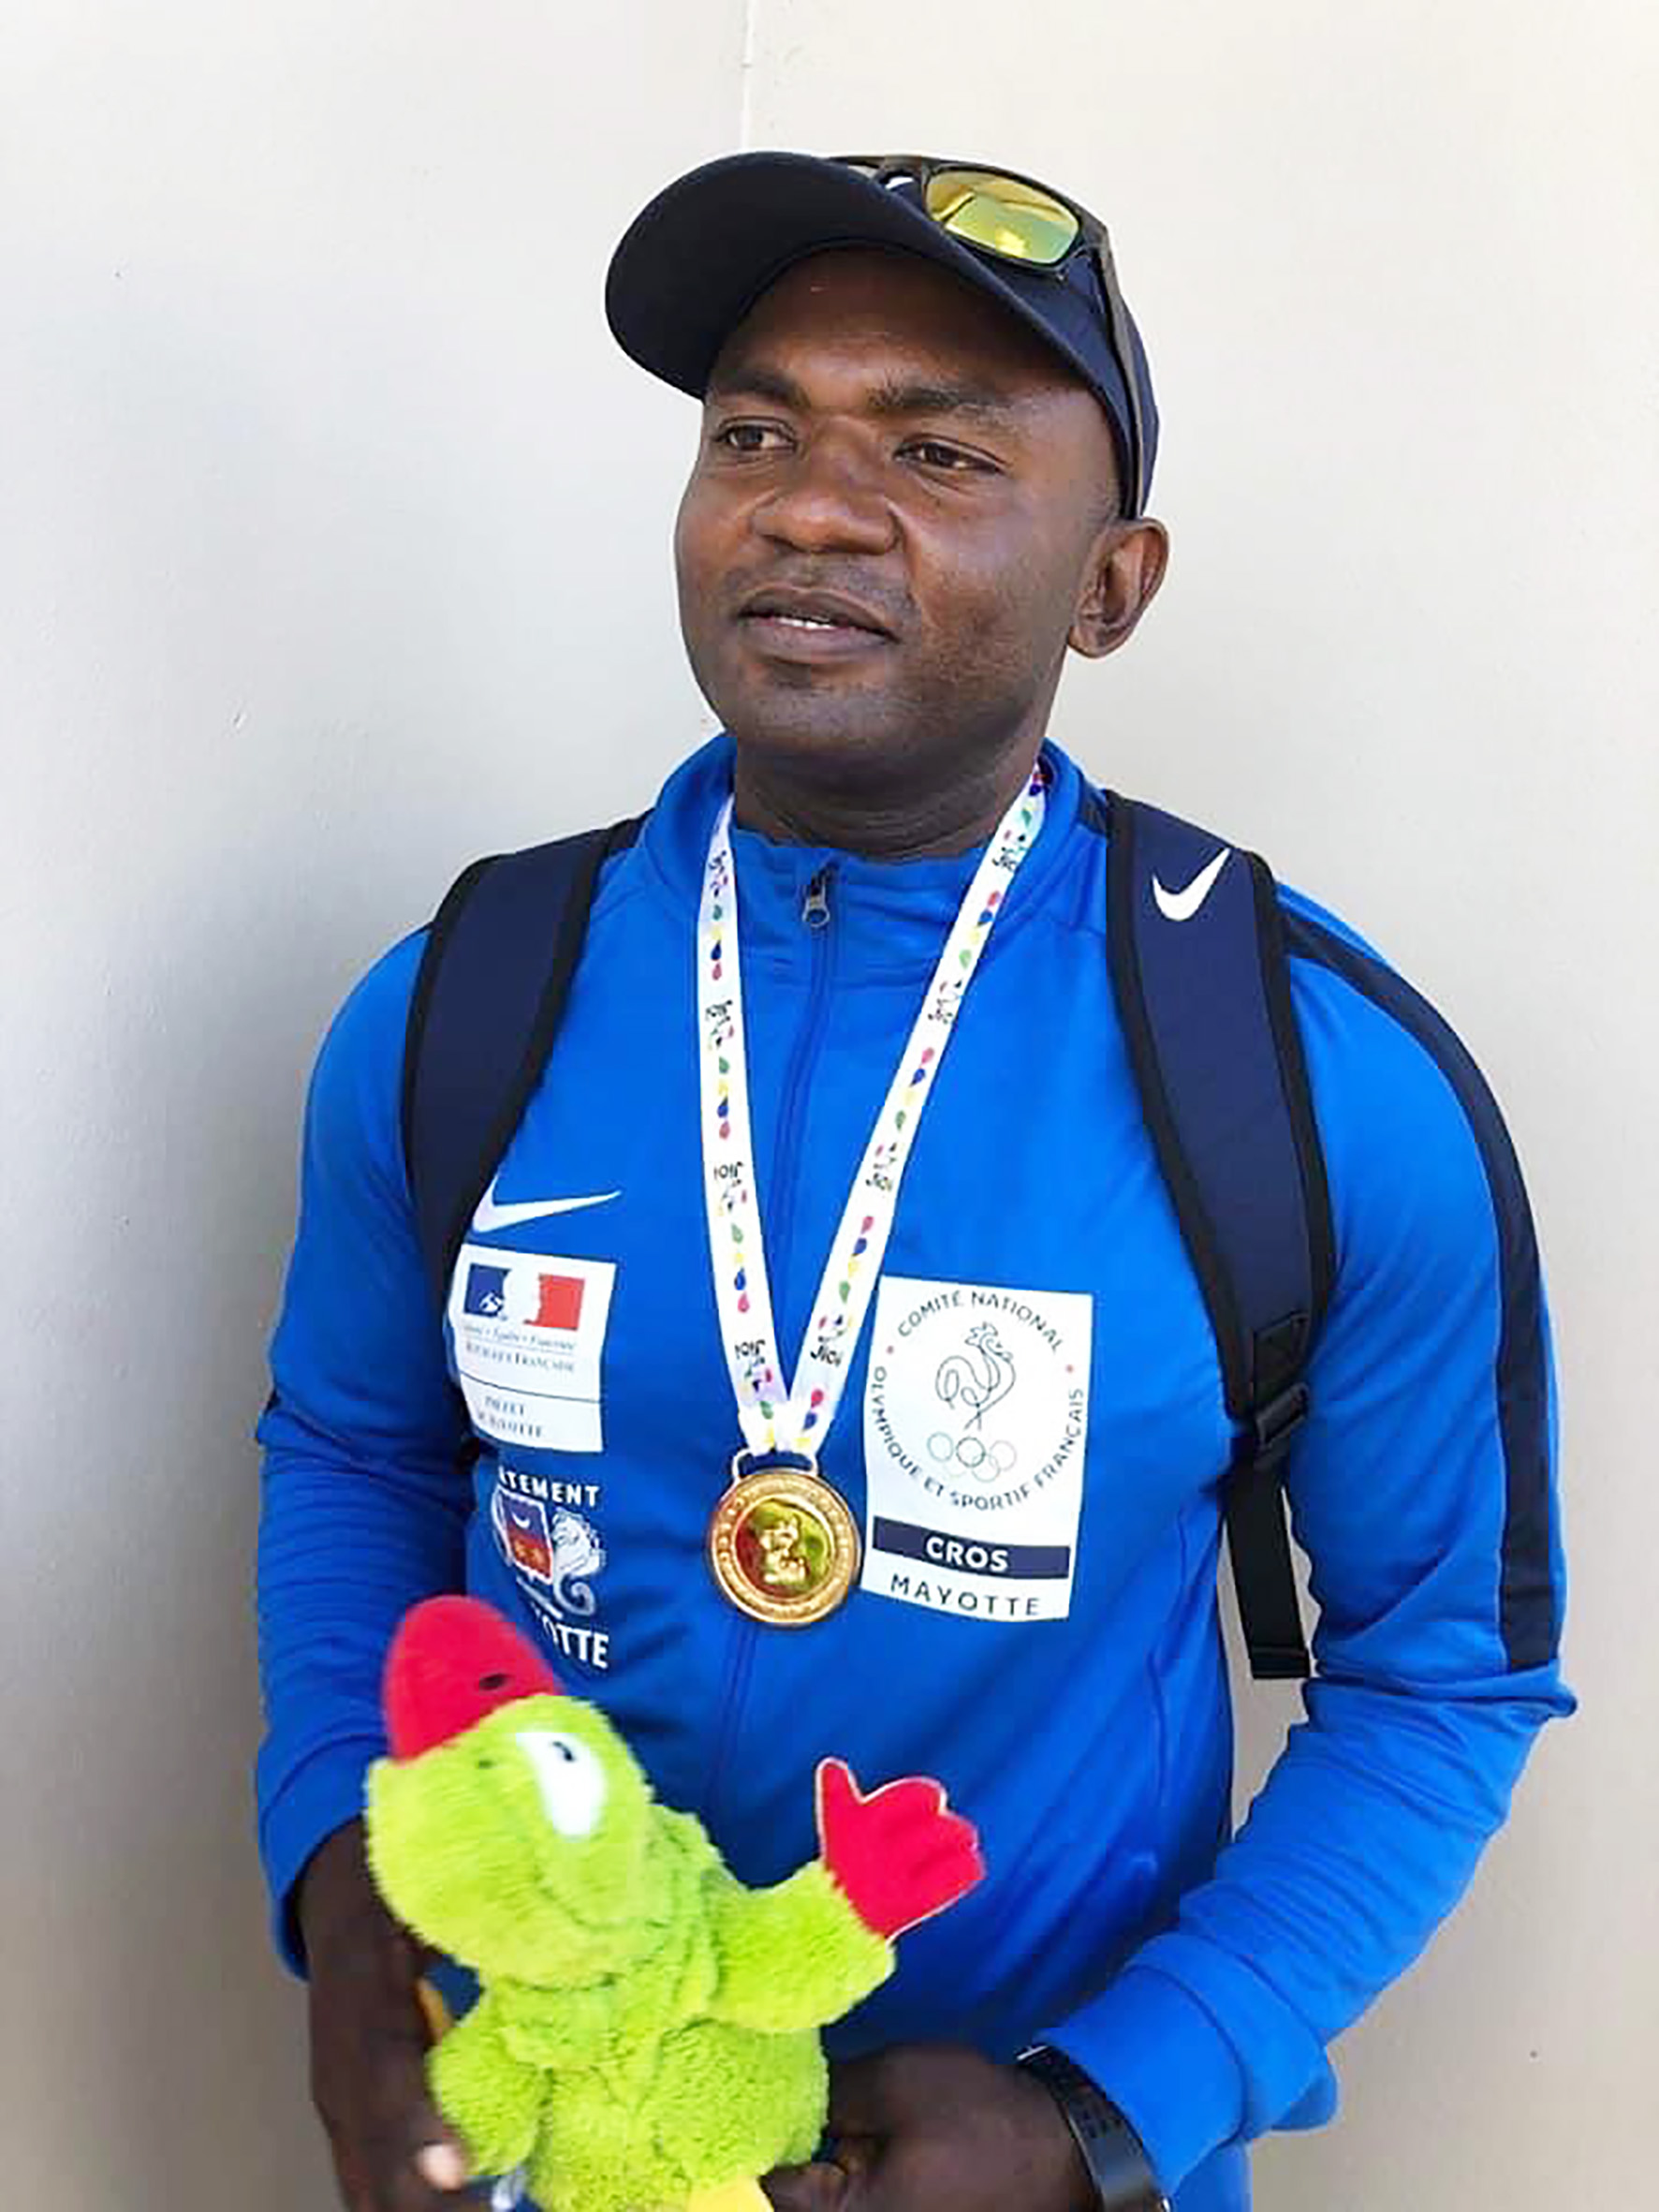 Le champion mahorais Ali Soultoini, médaillé d'or du javelot aux Jeux des Iles